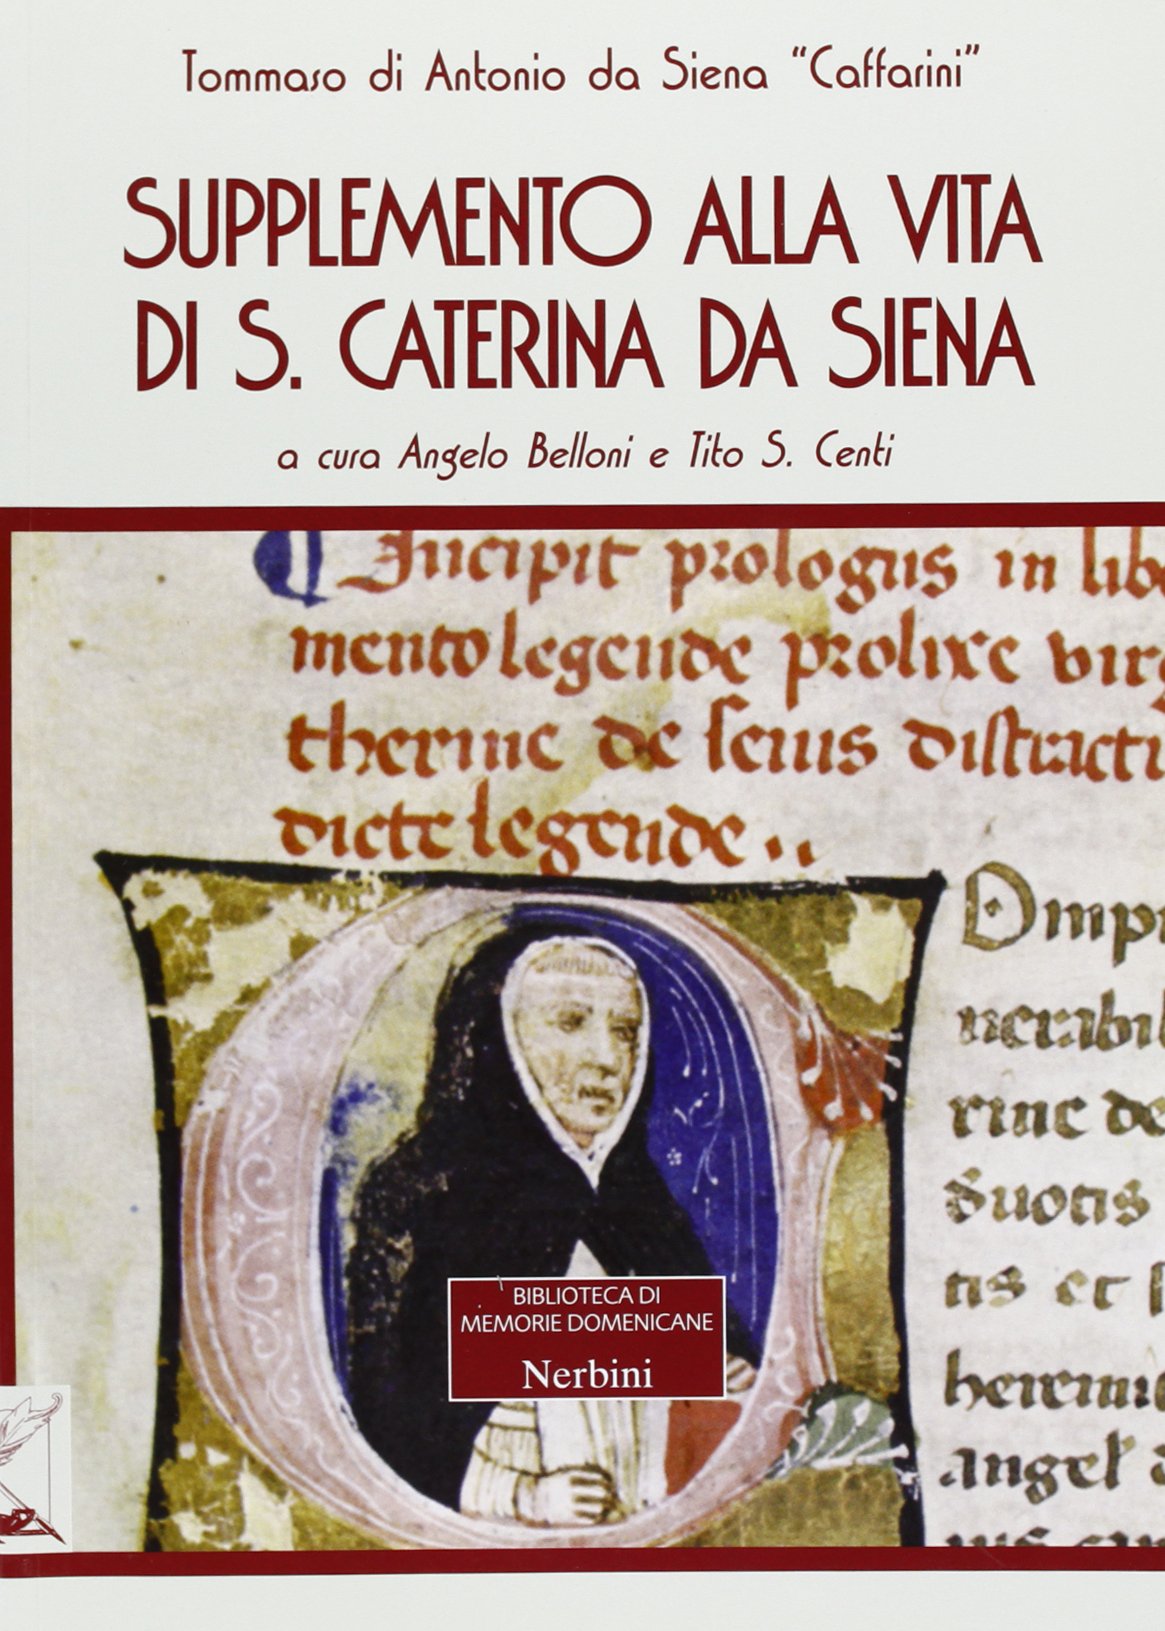 Libri Tommaso Caffarini - Supplemento Alla Vita Di Santa Caterina Da Siena NUOVO SIGILLATO, EDIZIONE DEL 08/05/2013 SUBITO DISPONIBILE